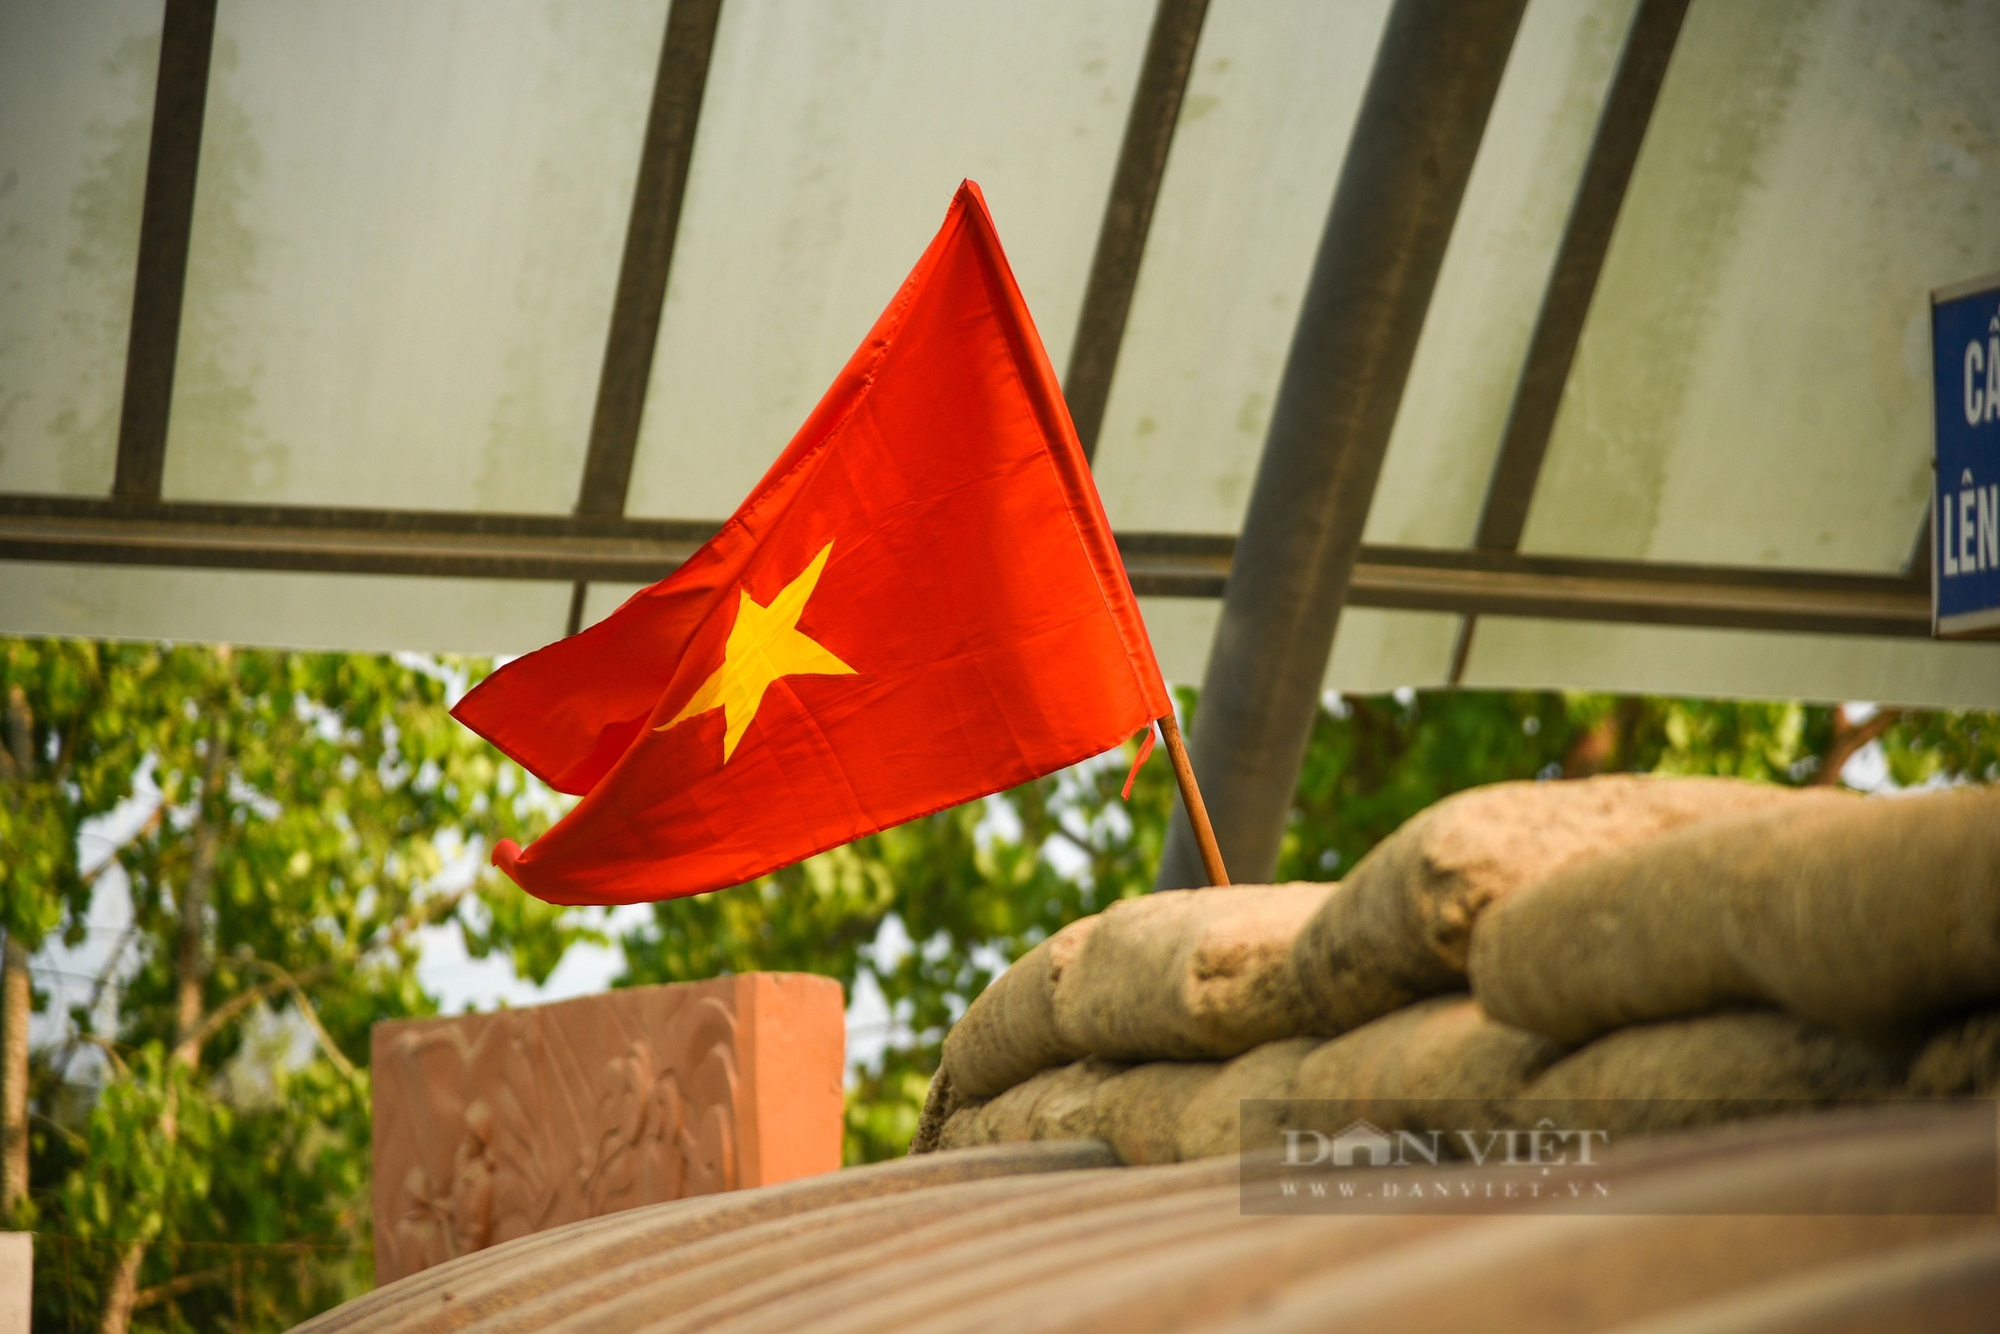 Cận cảnh căn hầm ở Điện Biên Phủ, nơi bắt sống tướng Đờ Cát cách đây 70 năm- Ảnh 11.